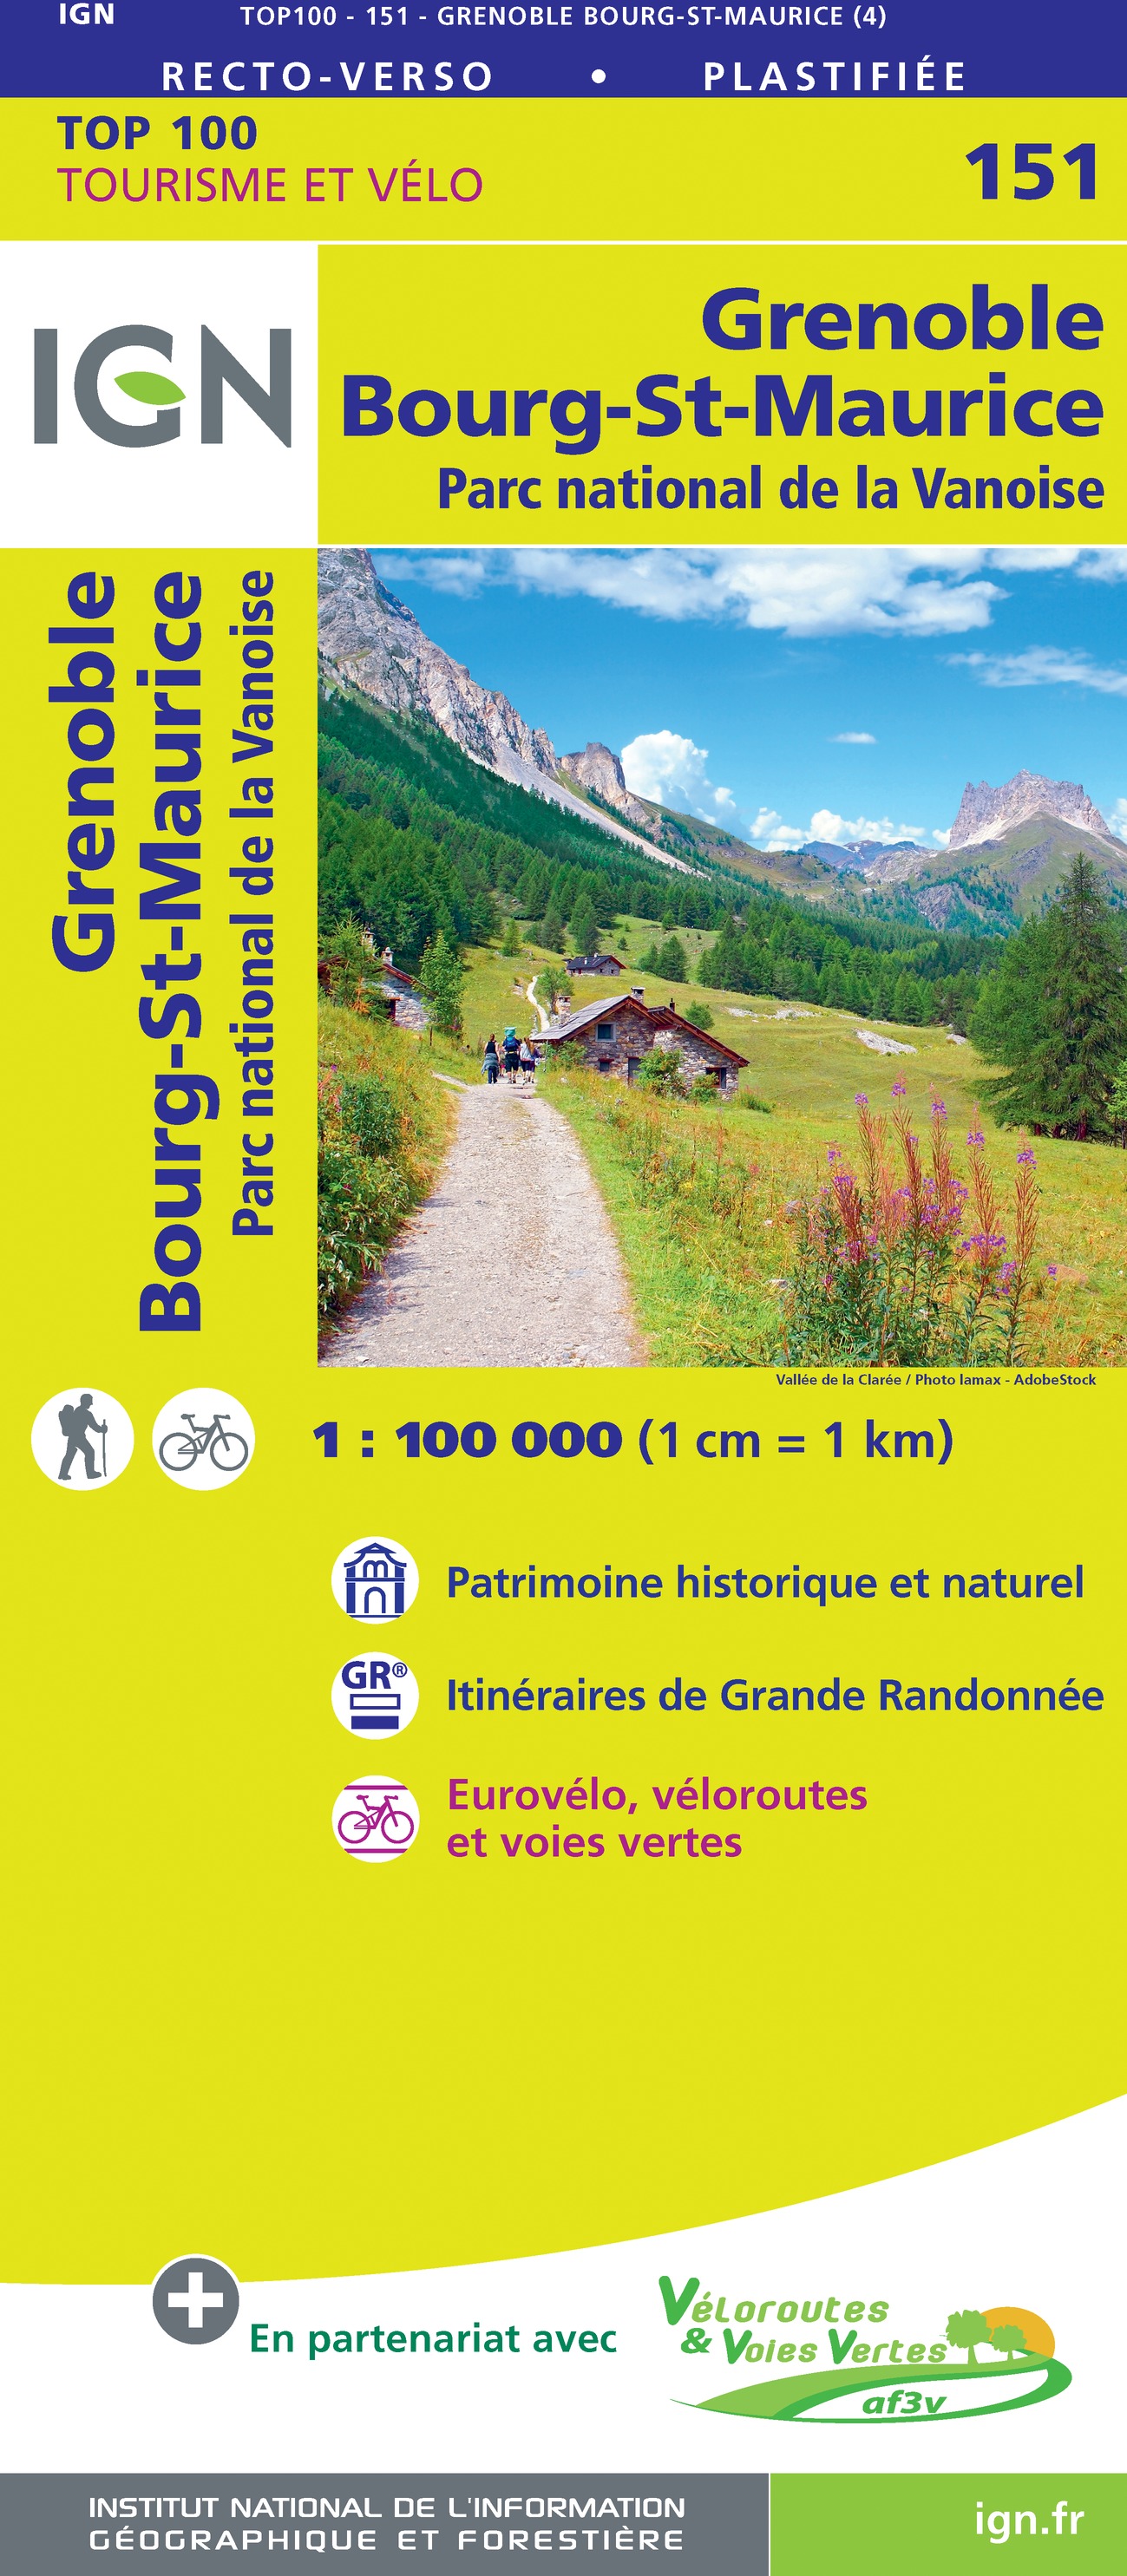 Online bestellen: Fietskaart - Wegenkaart - landkaart 151 Grenoble - Bourg-St-Maurice | IGN - Institut Géographique National